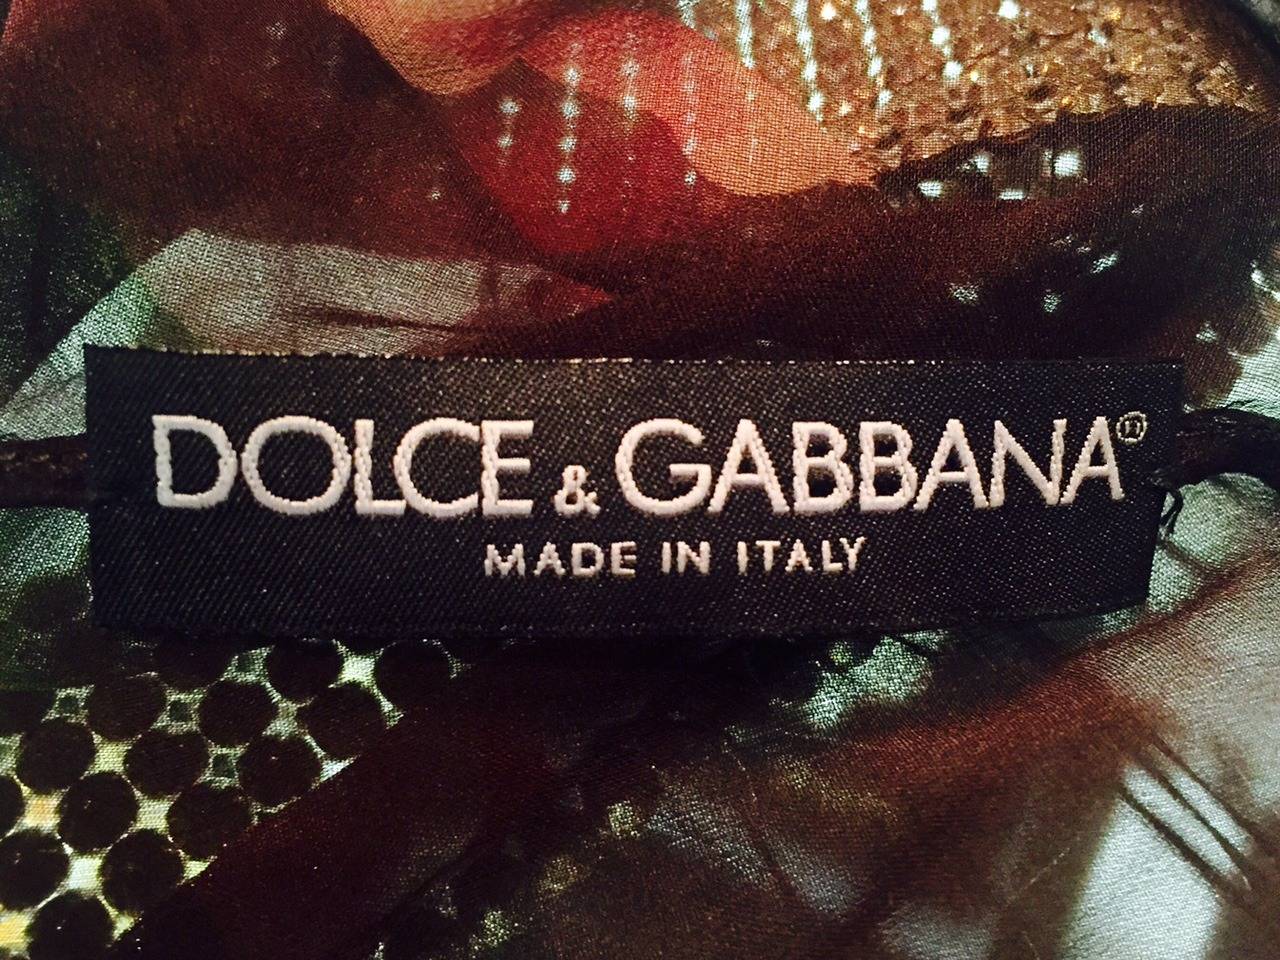 Dolce & Gabbana Silk Chiffon Blouse With Rhinestone Collar and Cuffs For Sale 3